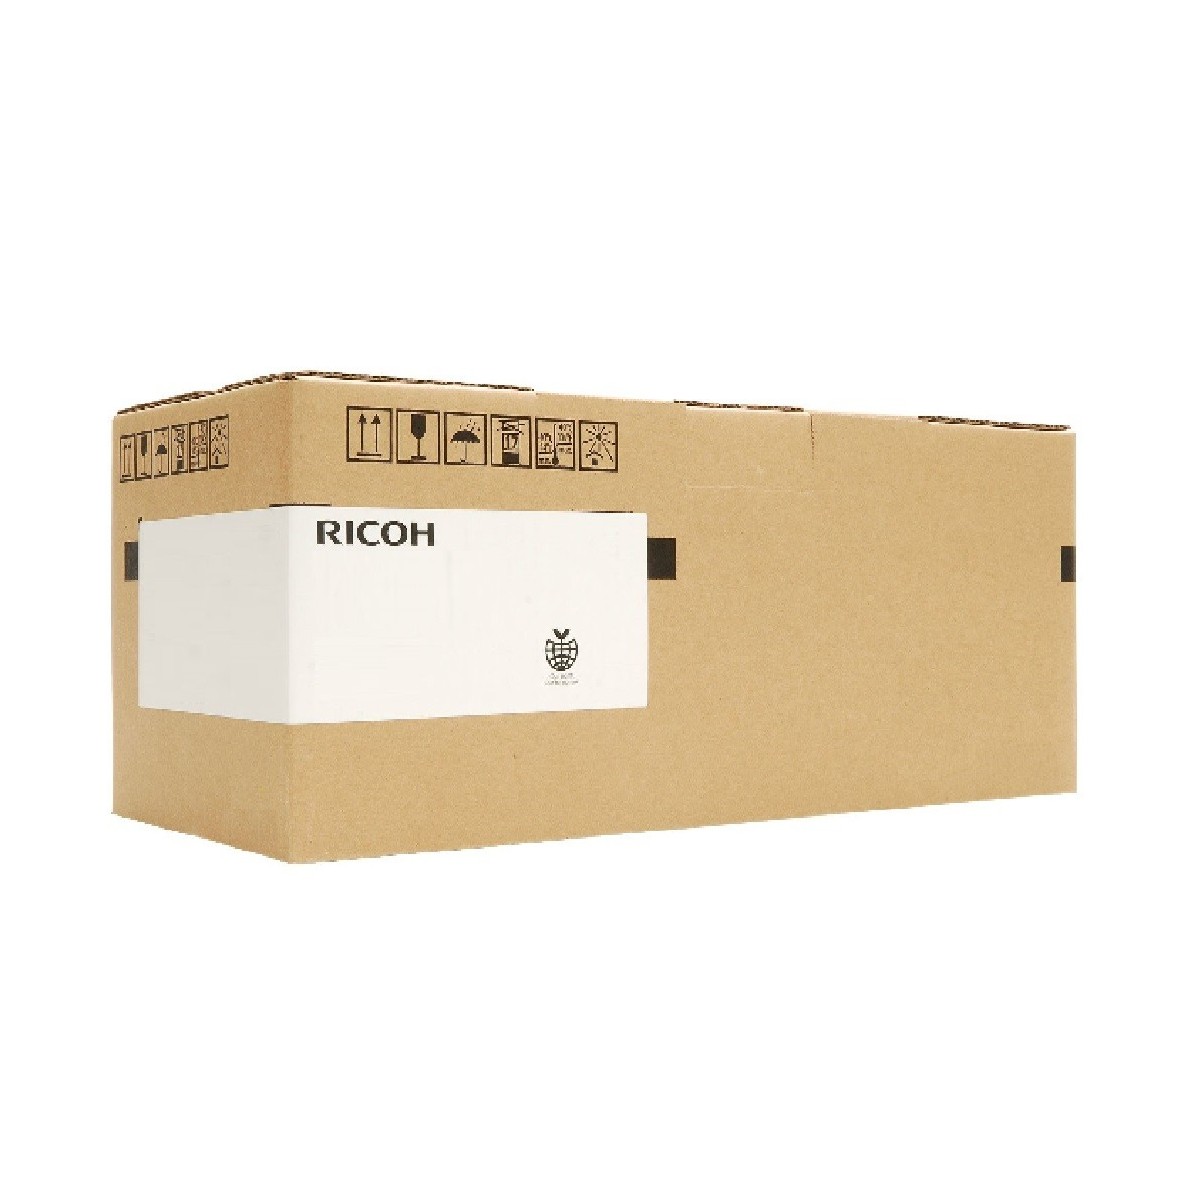 Ricoh D1863052 - 60000 pages - Black - Ricoh - Aficio MP C3003/C3503/C453/C5503